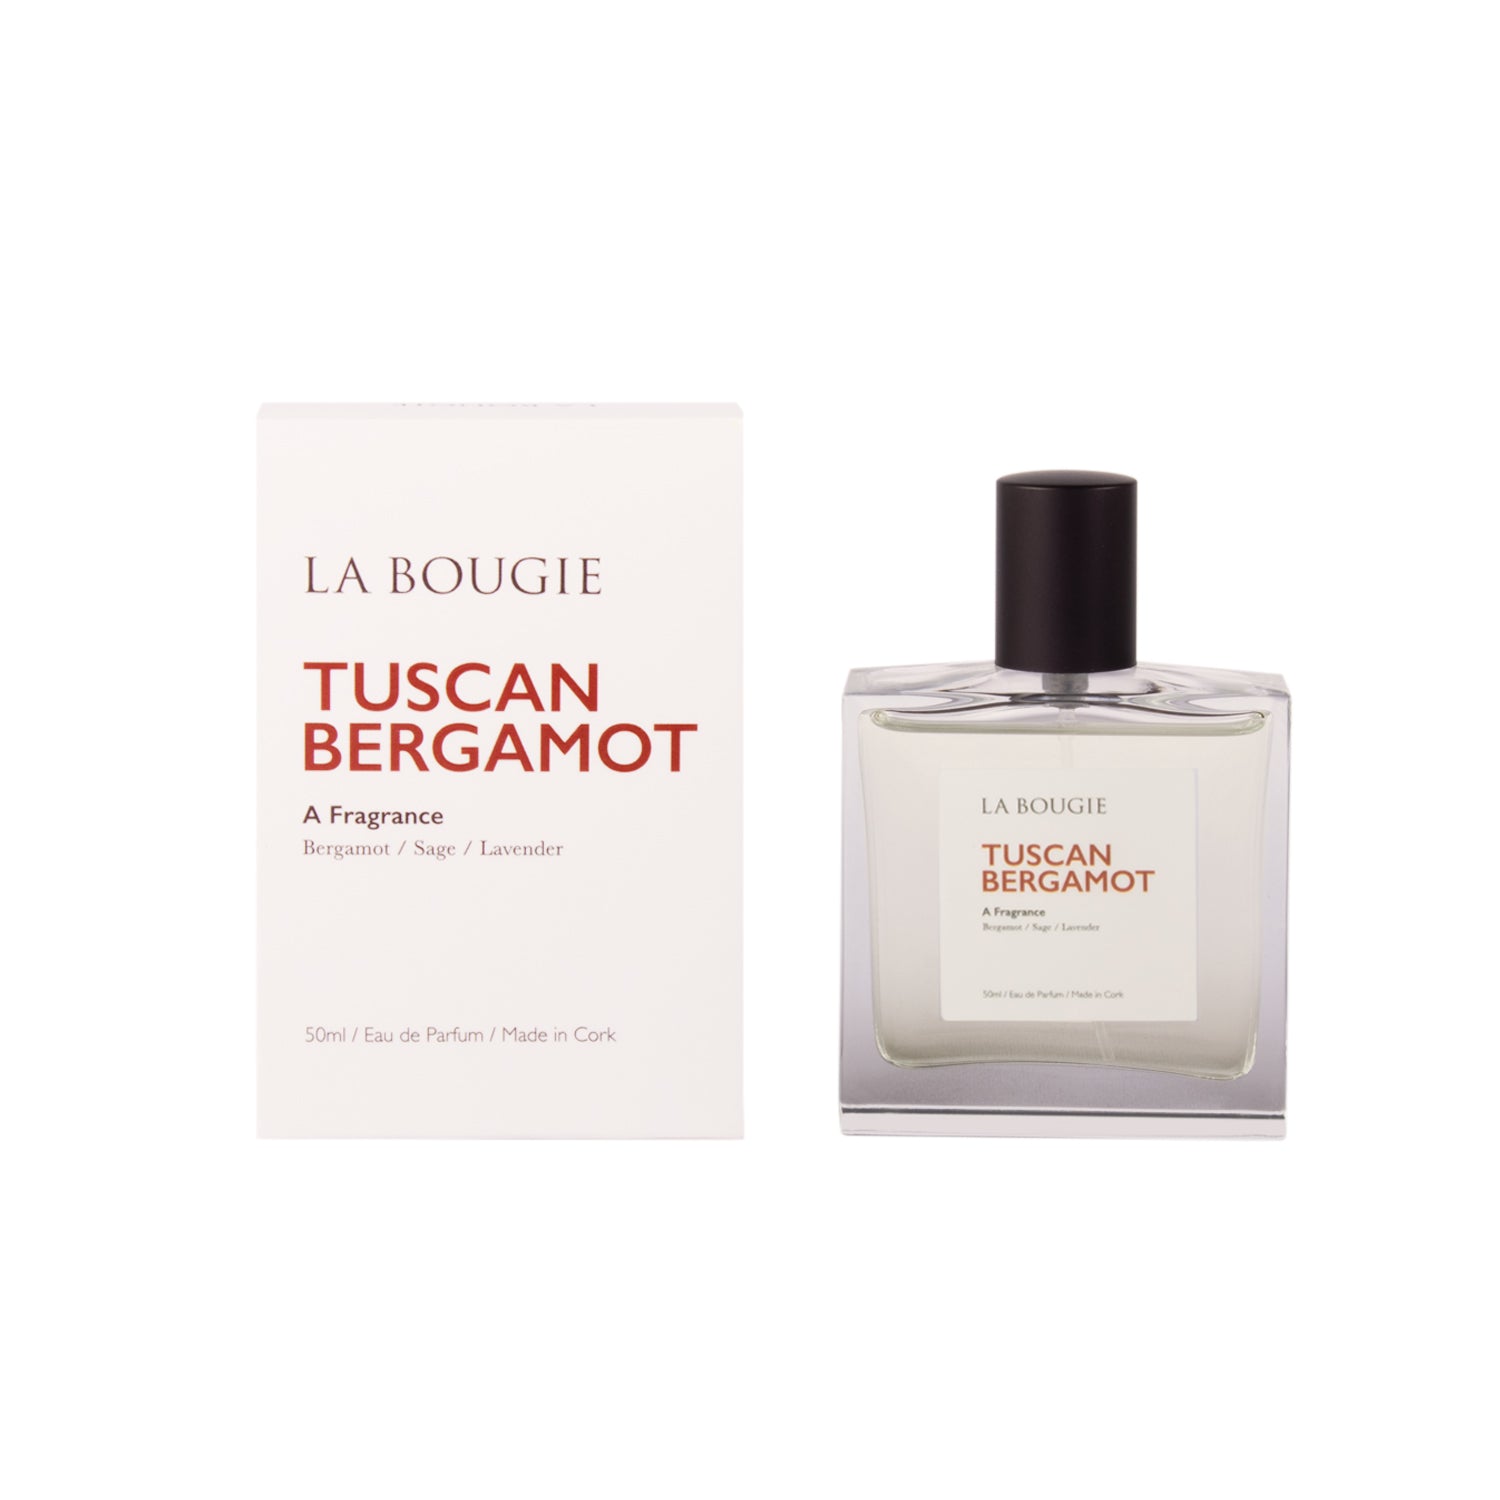 Tuscan Bergamot Perfume